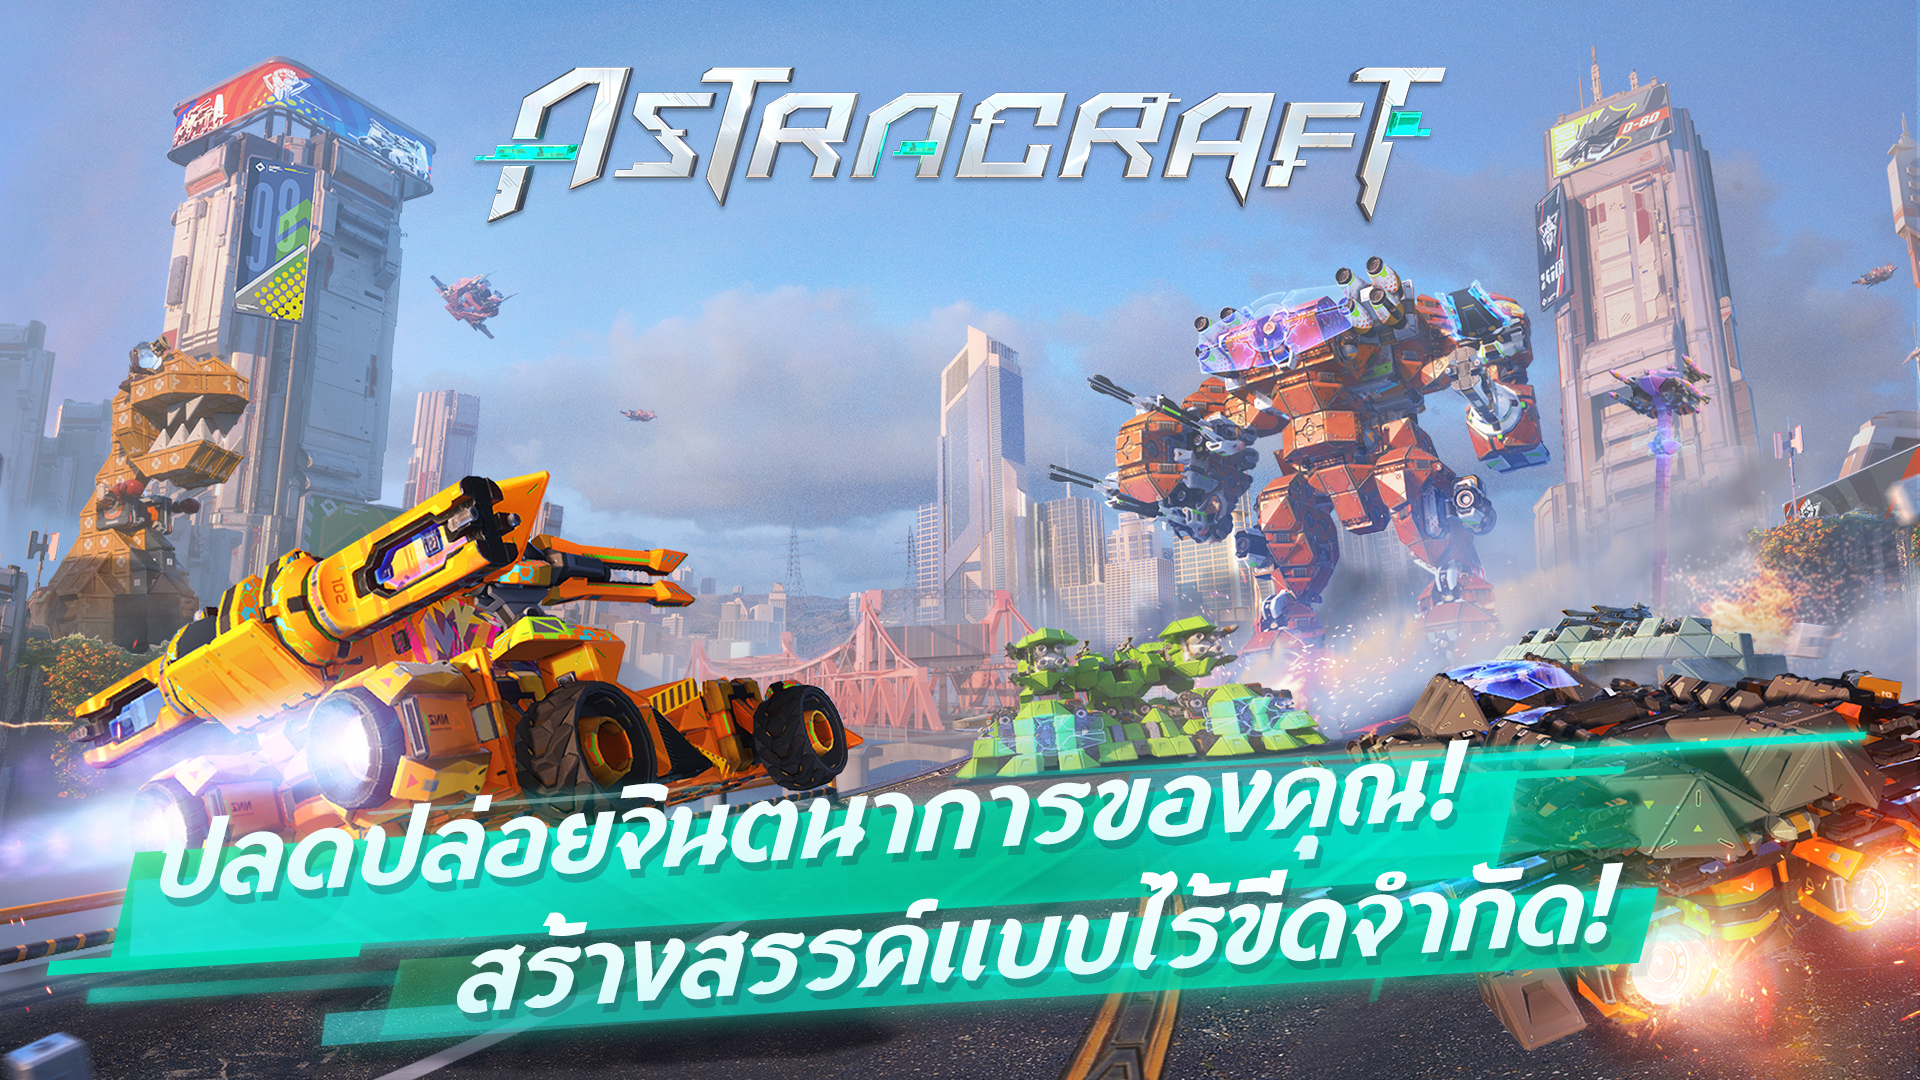 Astracraft ผลงานจาก NetEase Games เตรียมเปิดตัวทั่วโลก พร้อมแผนรับสมัครอินฟลูเอนเซอร์!